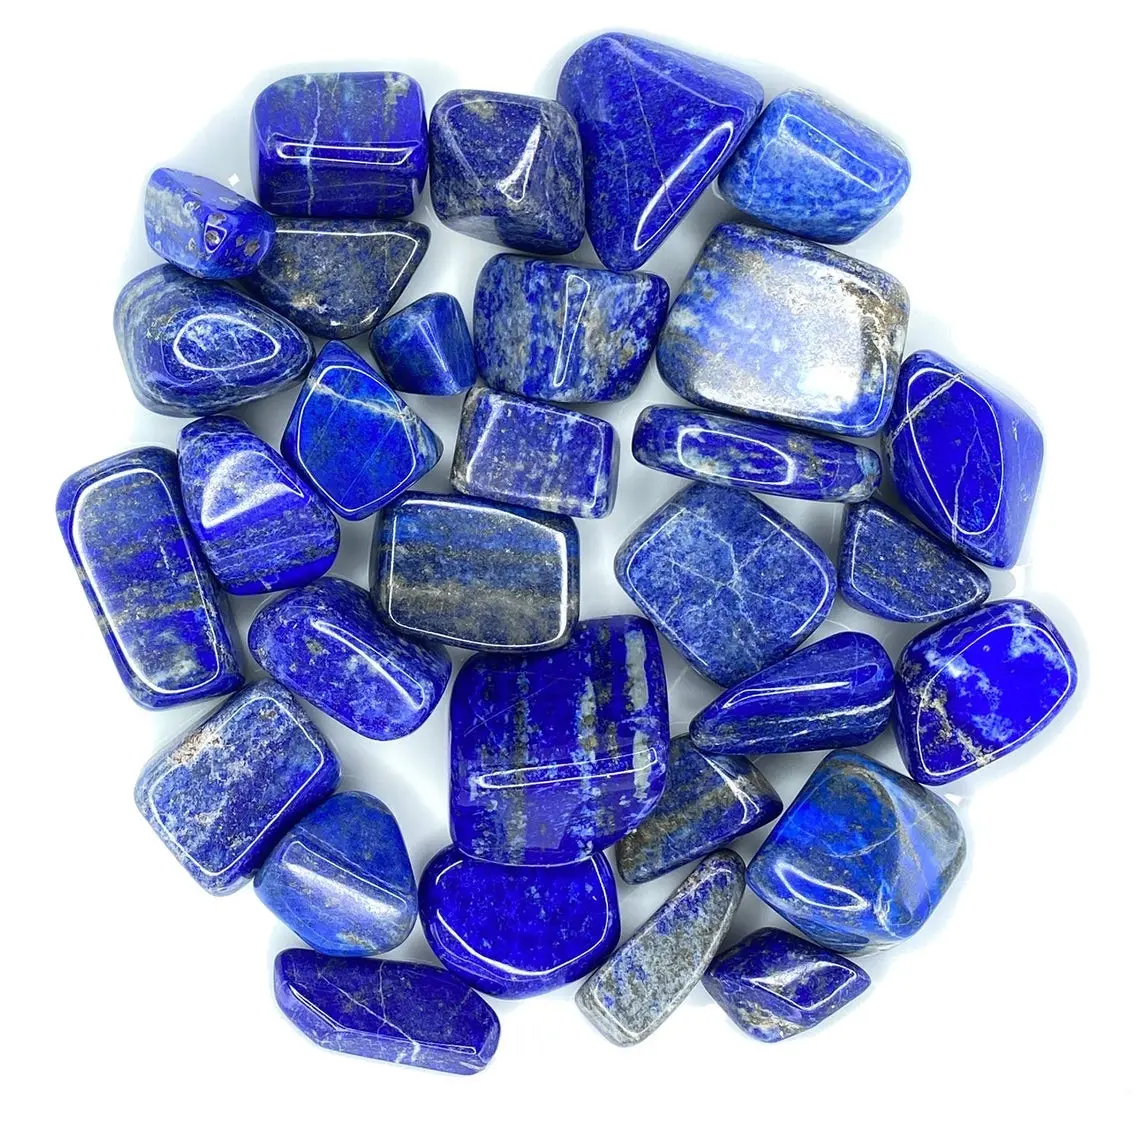 Bán Buôn Chất Lượng Cao Lapis Lazuli Đá Thô Đánh Bóng Lapis Đá Mài Để Trang Trí Nhà Mua Từ Chính Hãng Agate